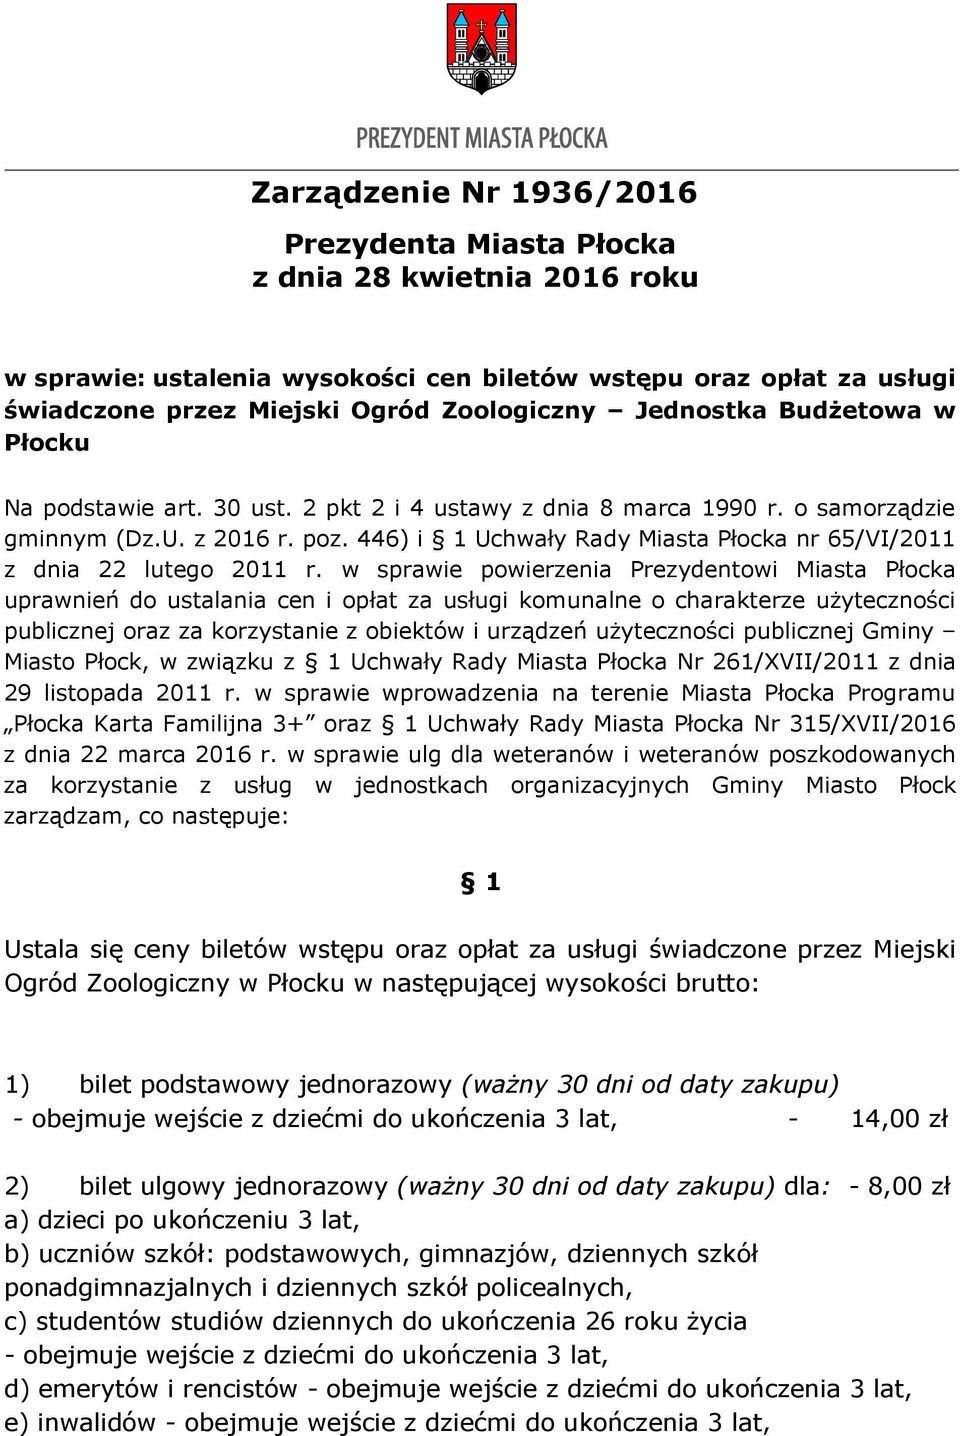 446) i 1 Uchwały Rady Miasta Płocka nr 65/VI/2011 z dnia 22 lutego 2011 r.